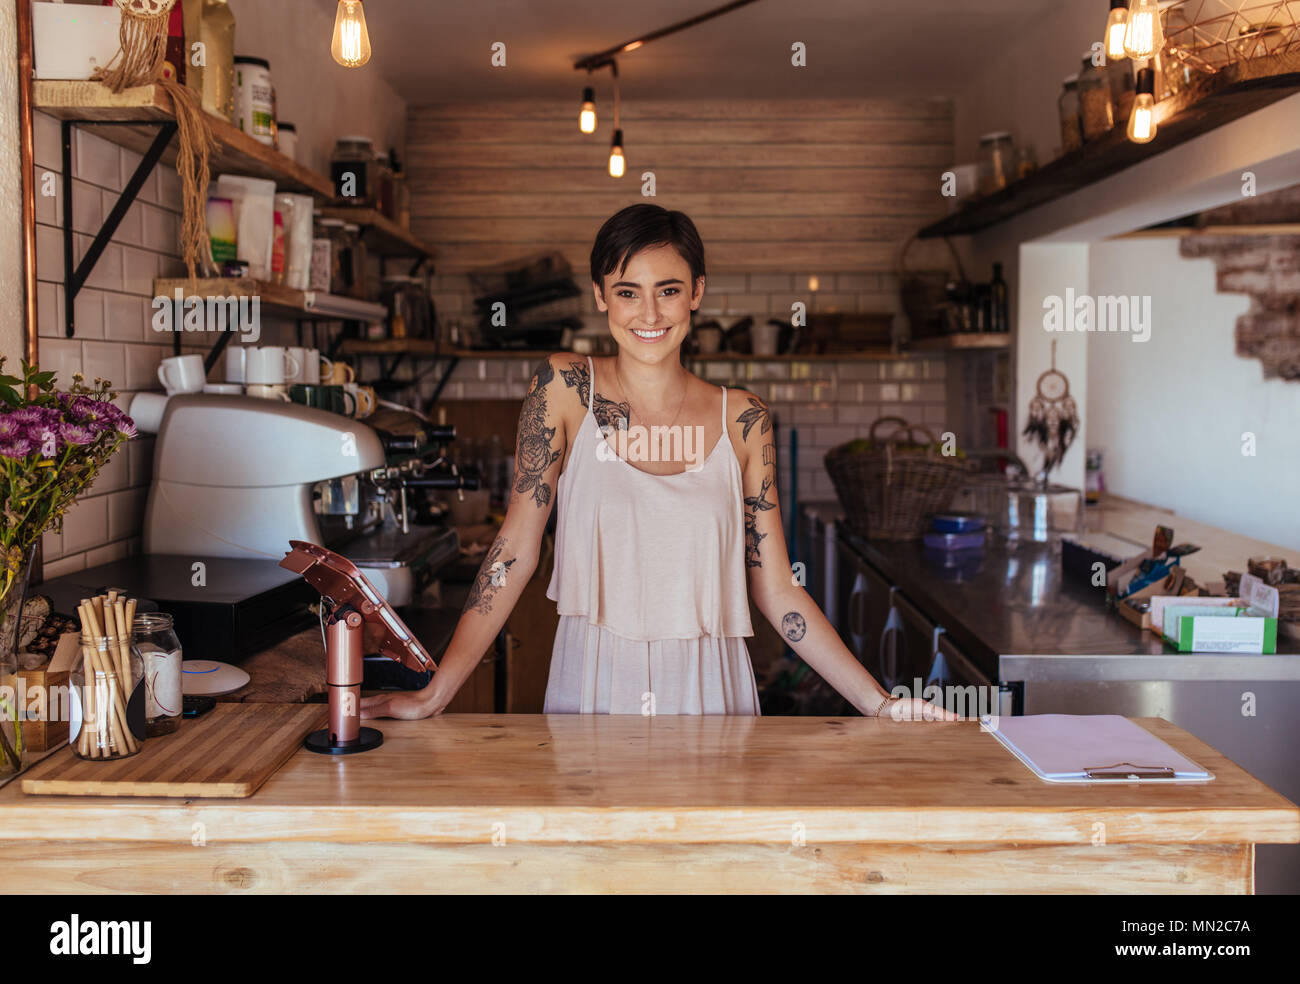 Femme debout au comptoir de facturation de son café posant. Propriétaire de restaurant souriant debout à côté de la machine de facturation. Banque D'Images